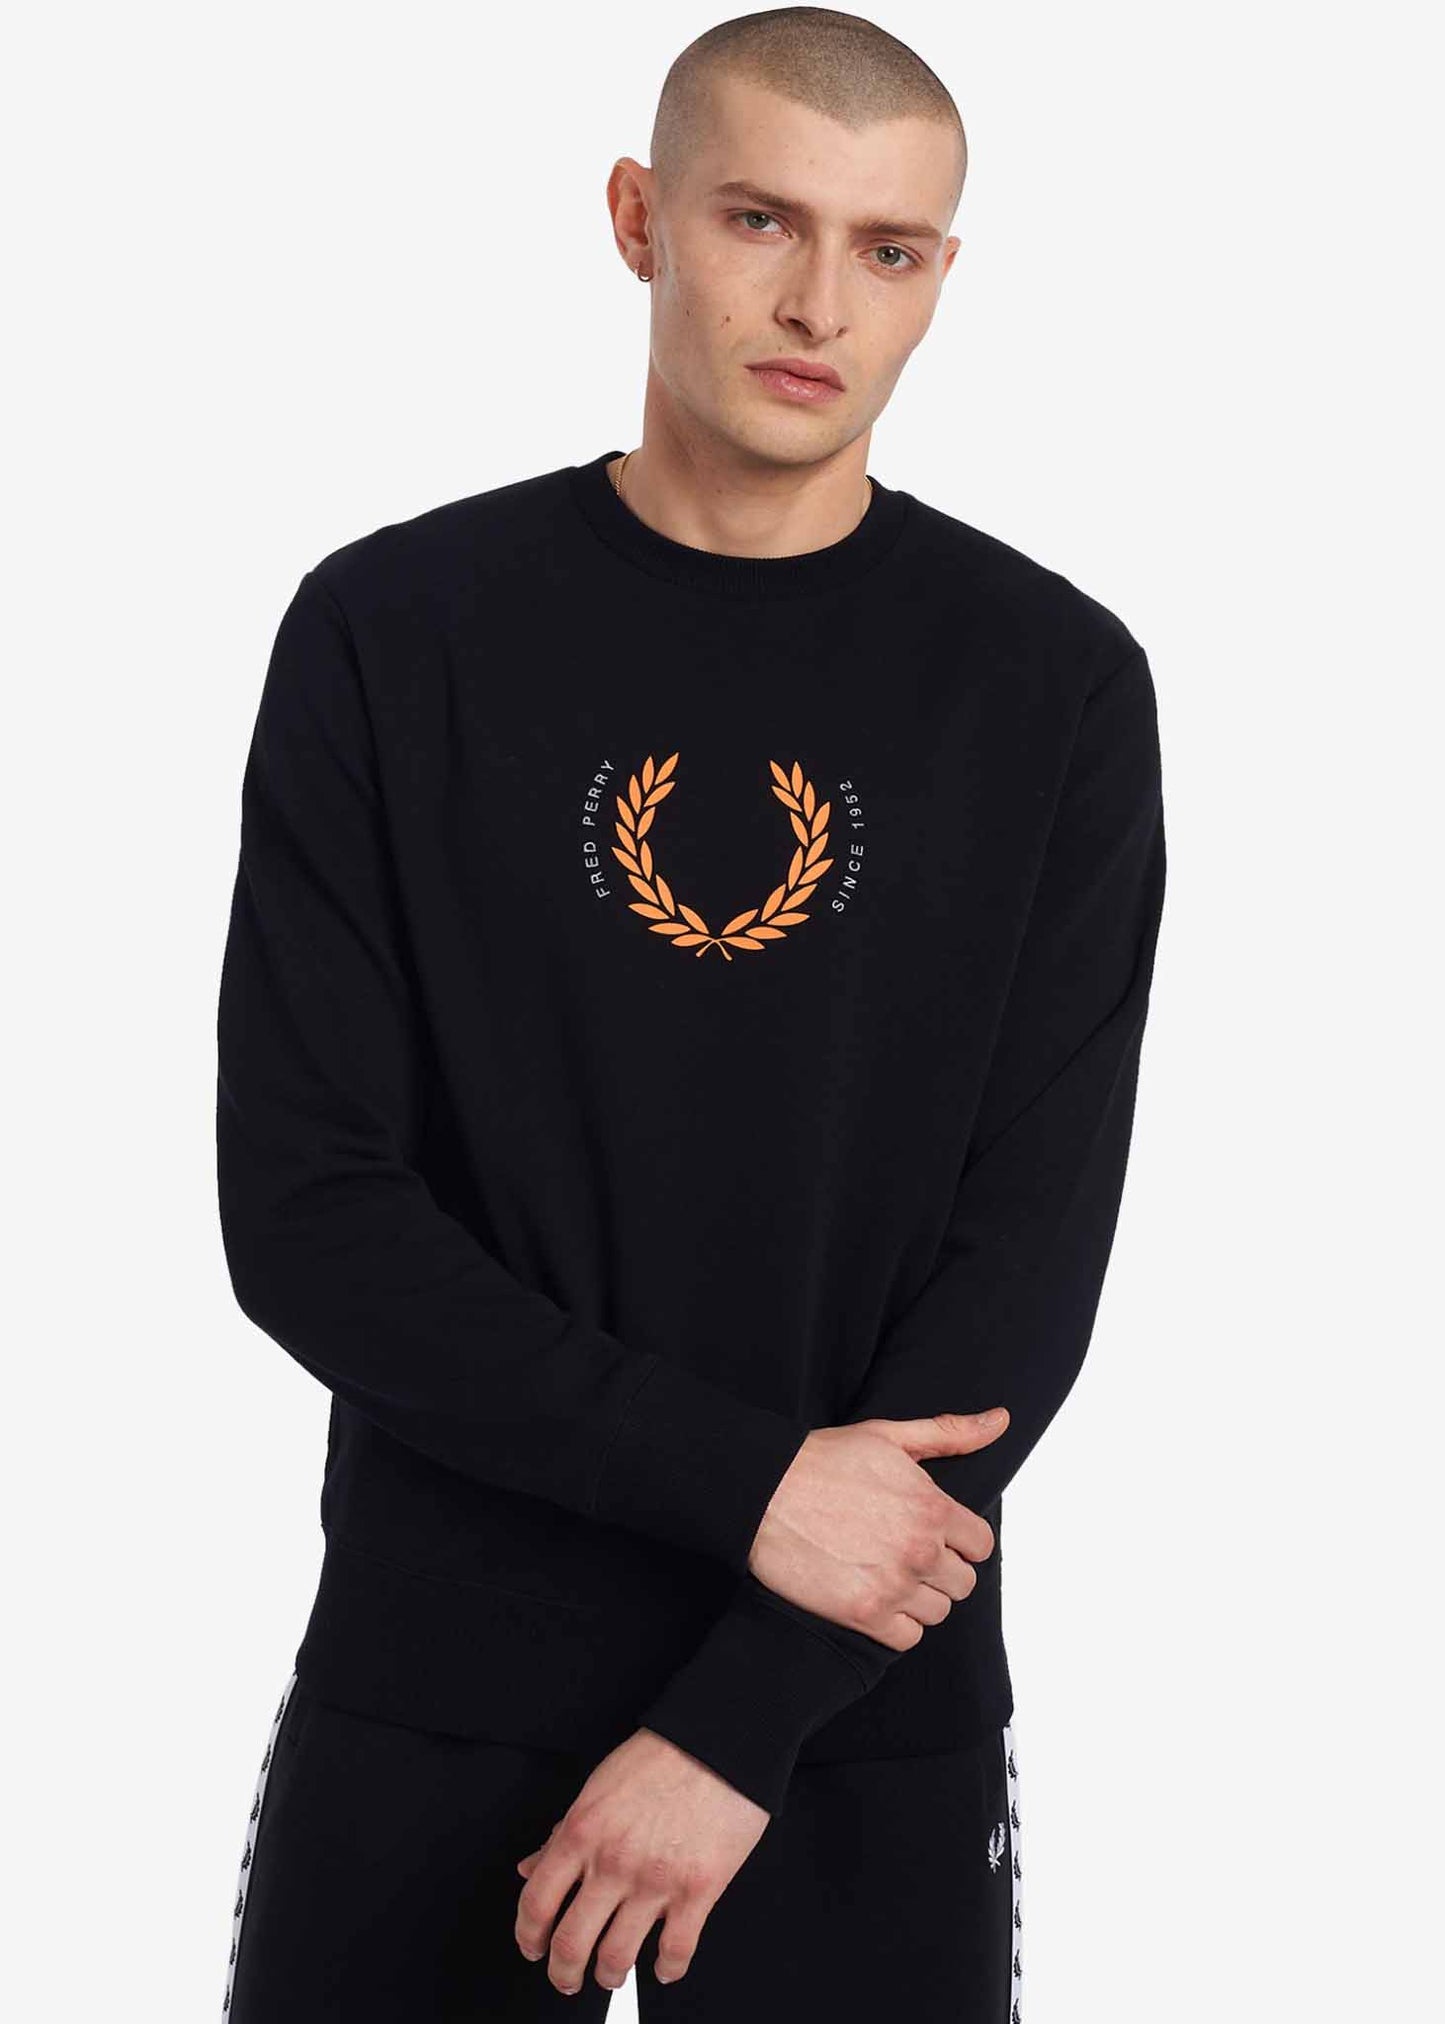 Laurel wreath sweatshirt - black